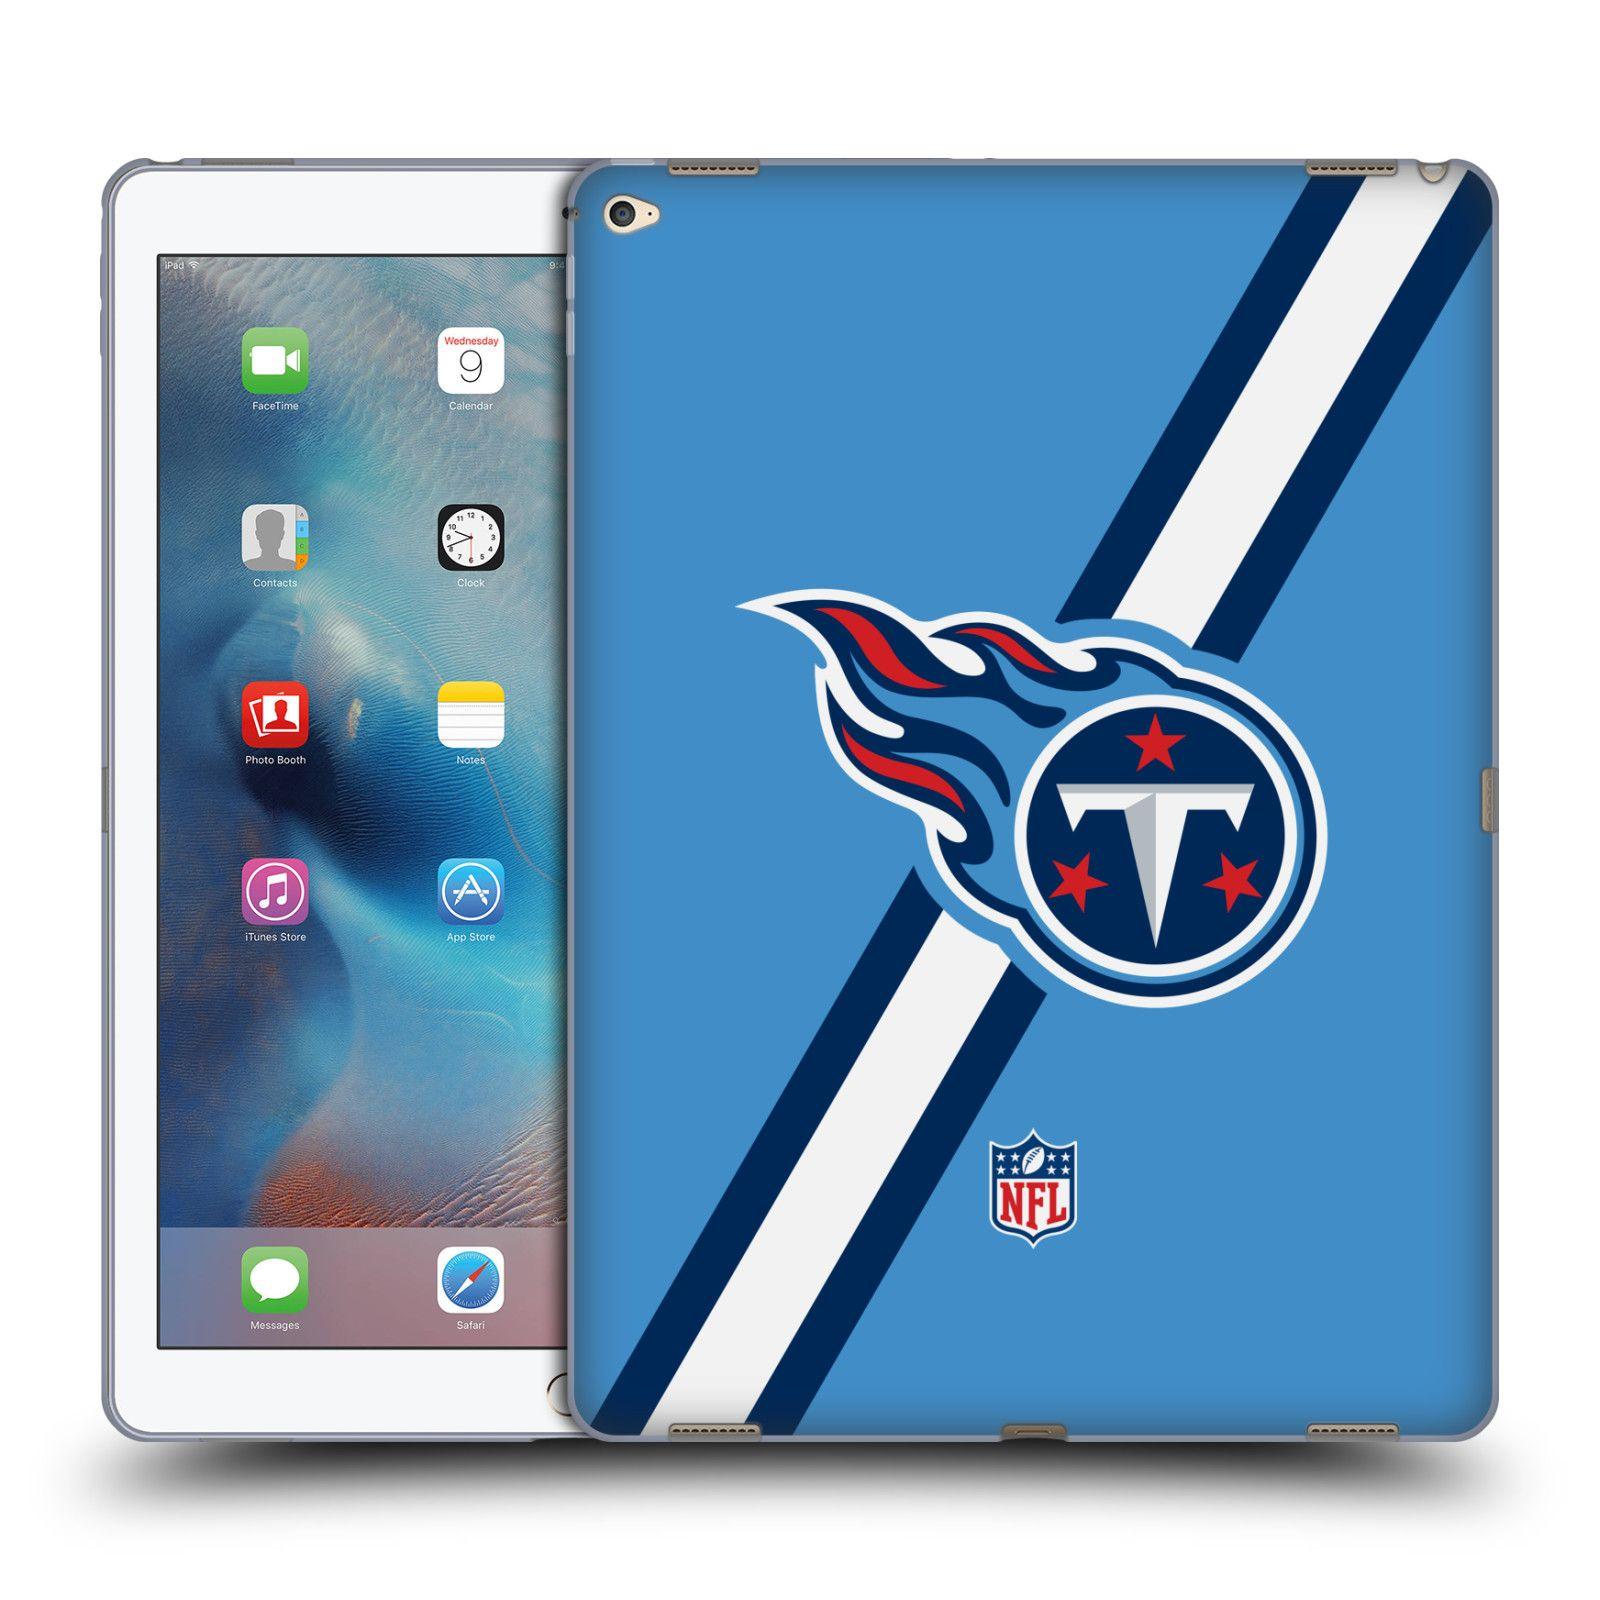 Samsung Tablet Logo - OFFICIAL NFL TENNESSEE TITANS LOGO SOFT GEL CASE FOR APPLE SAMSUNG ...